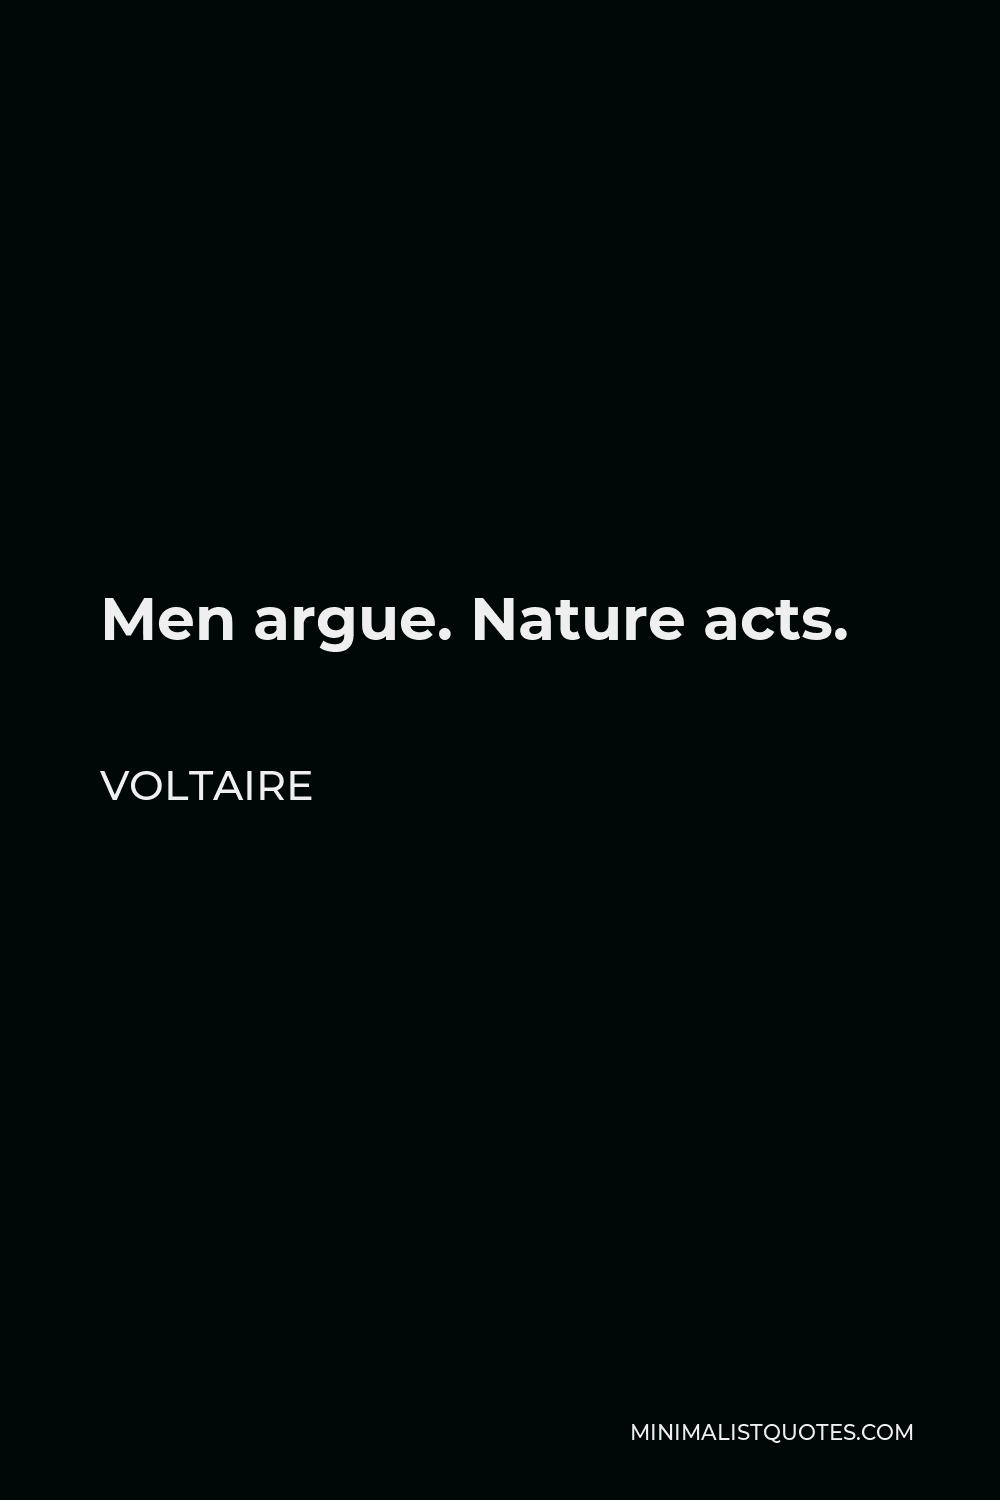 Voltaire Quote - Men argue. Nature acts.